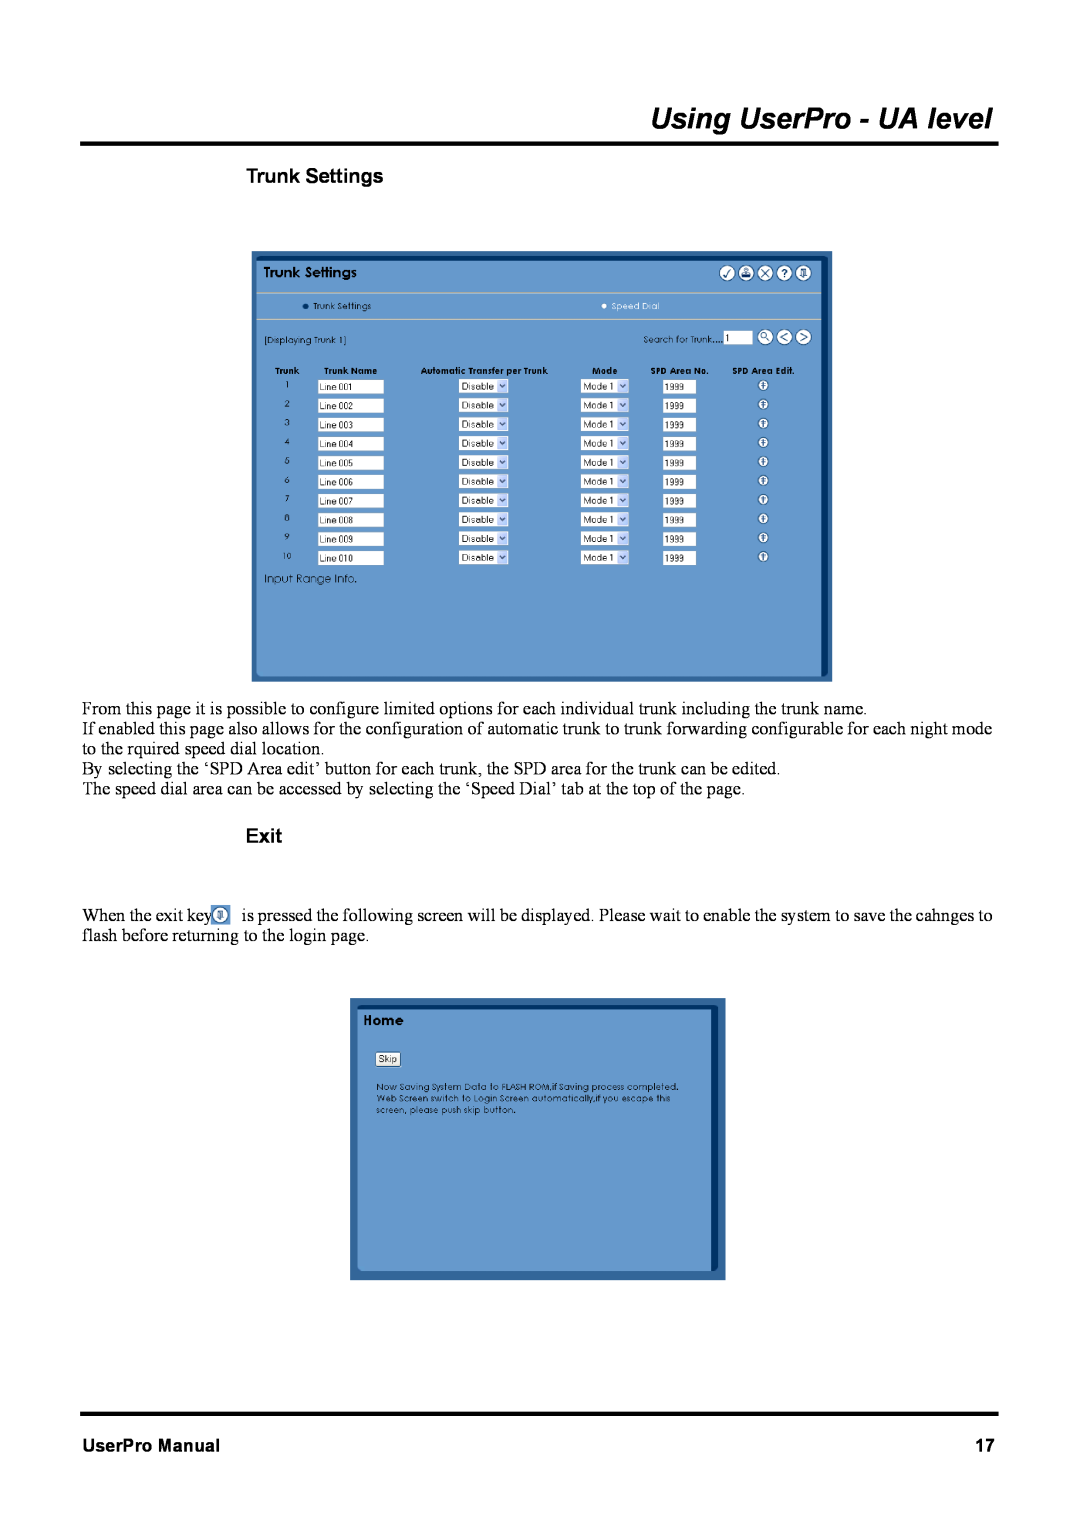 NEC XN120 manual Using UserPro - UA level, Trunk Settings, Exit, UserPro Manual 